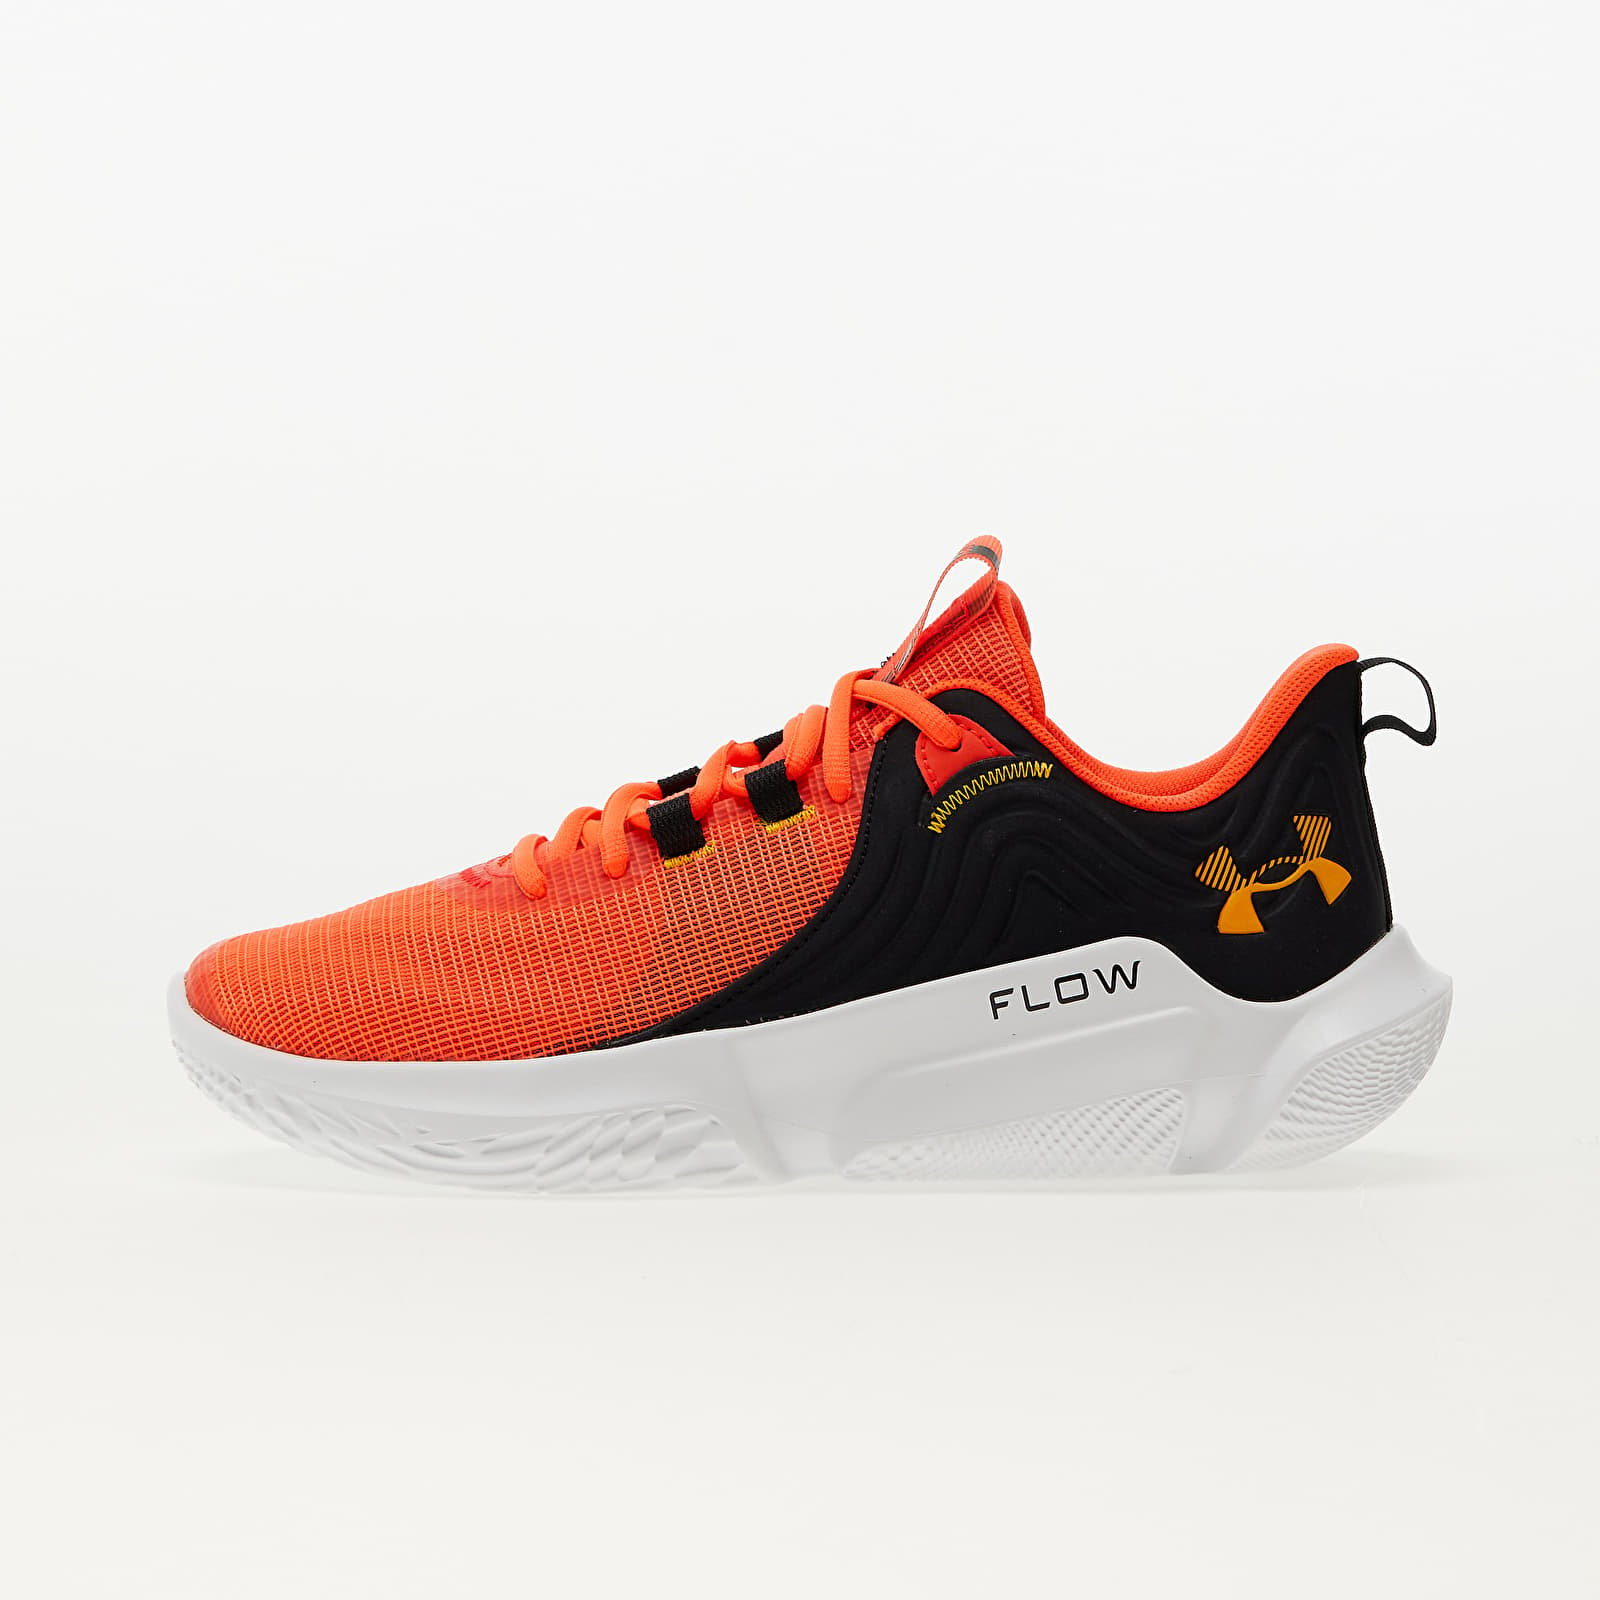 Men's shoes Under Armour FLOW FUTR X 2 Bolt Red/ Black/ Orange Shock